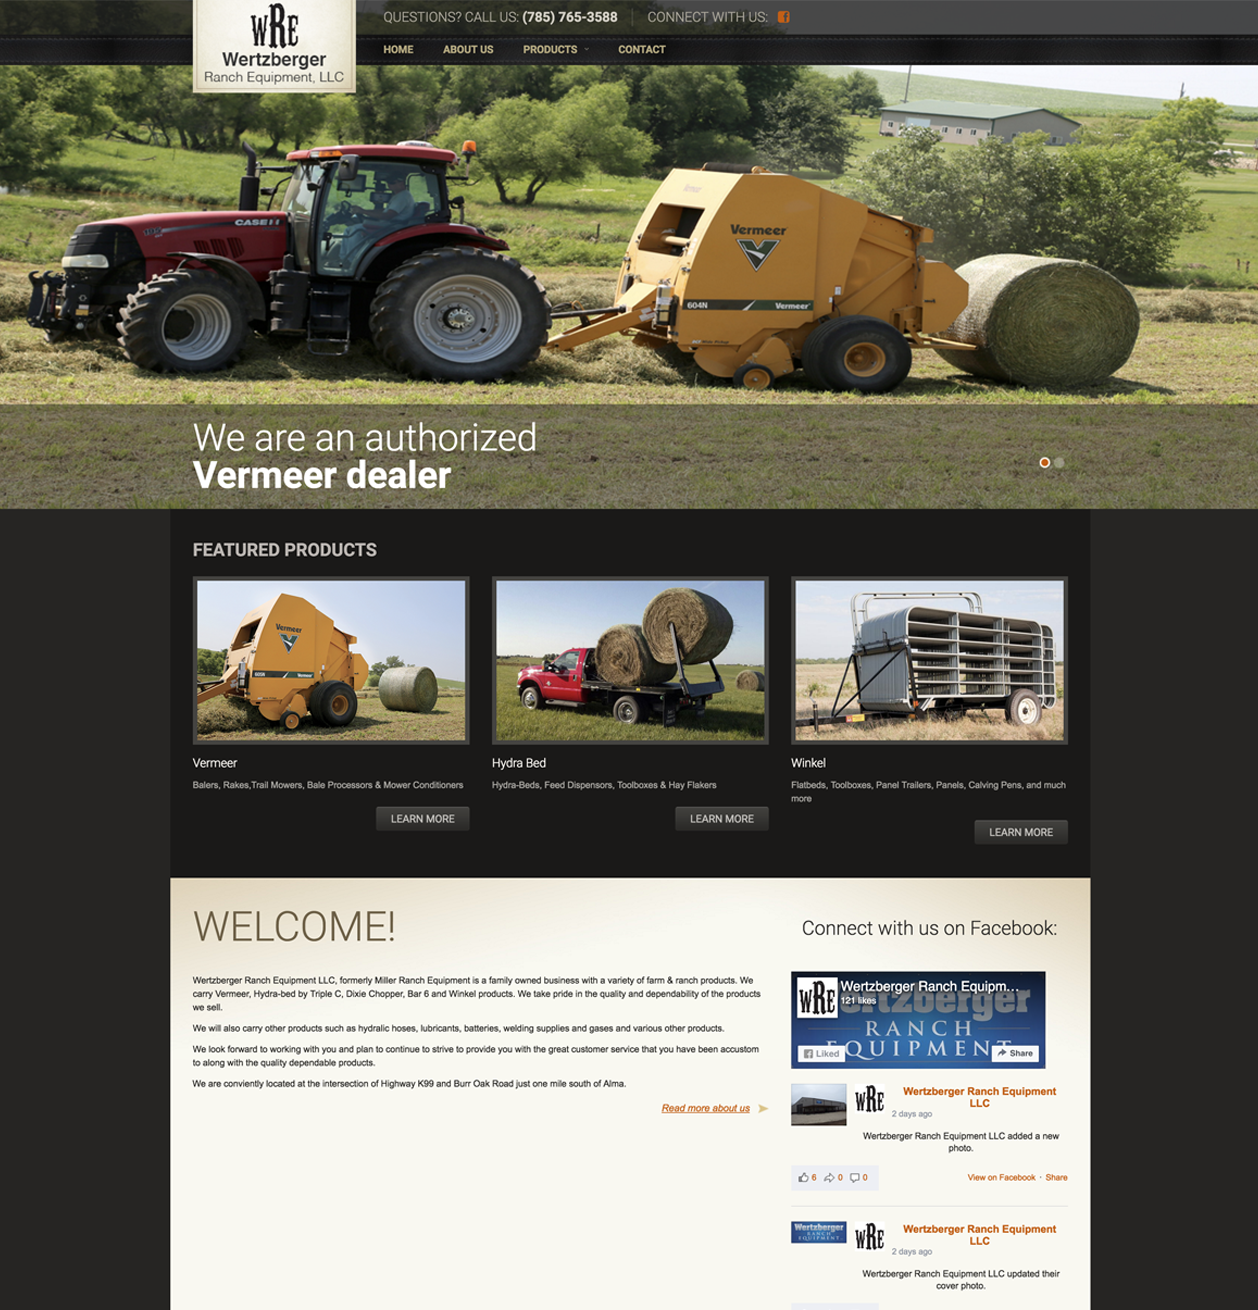 Wertzberger Ranch Equipment, LLC